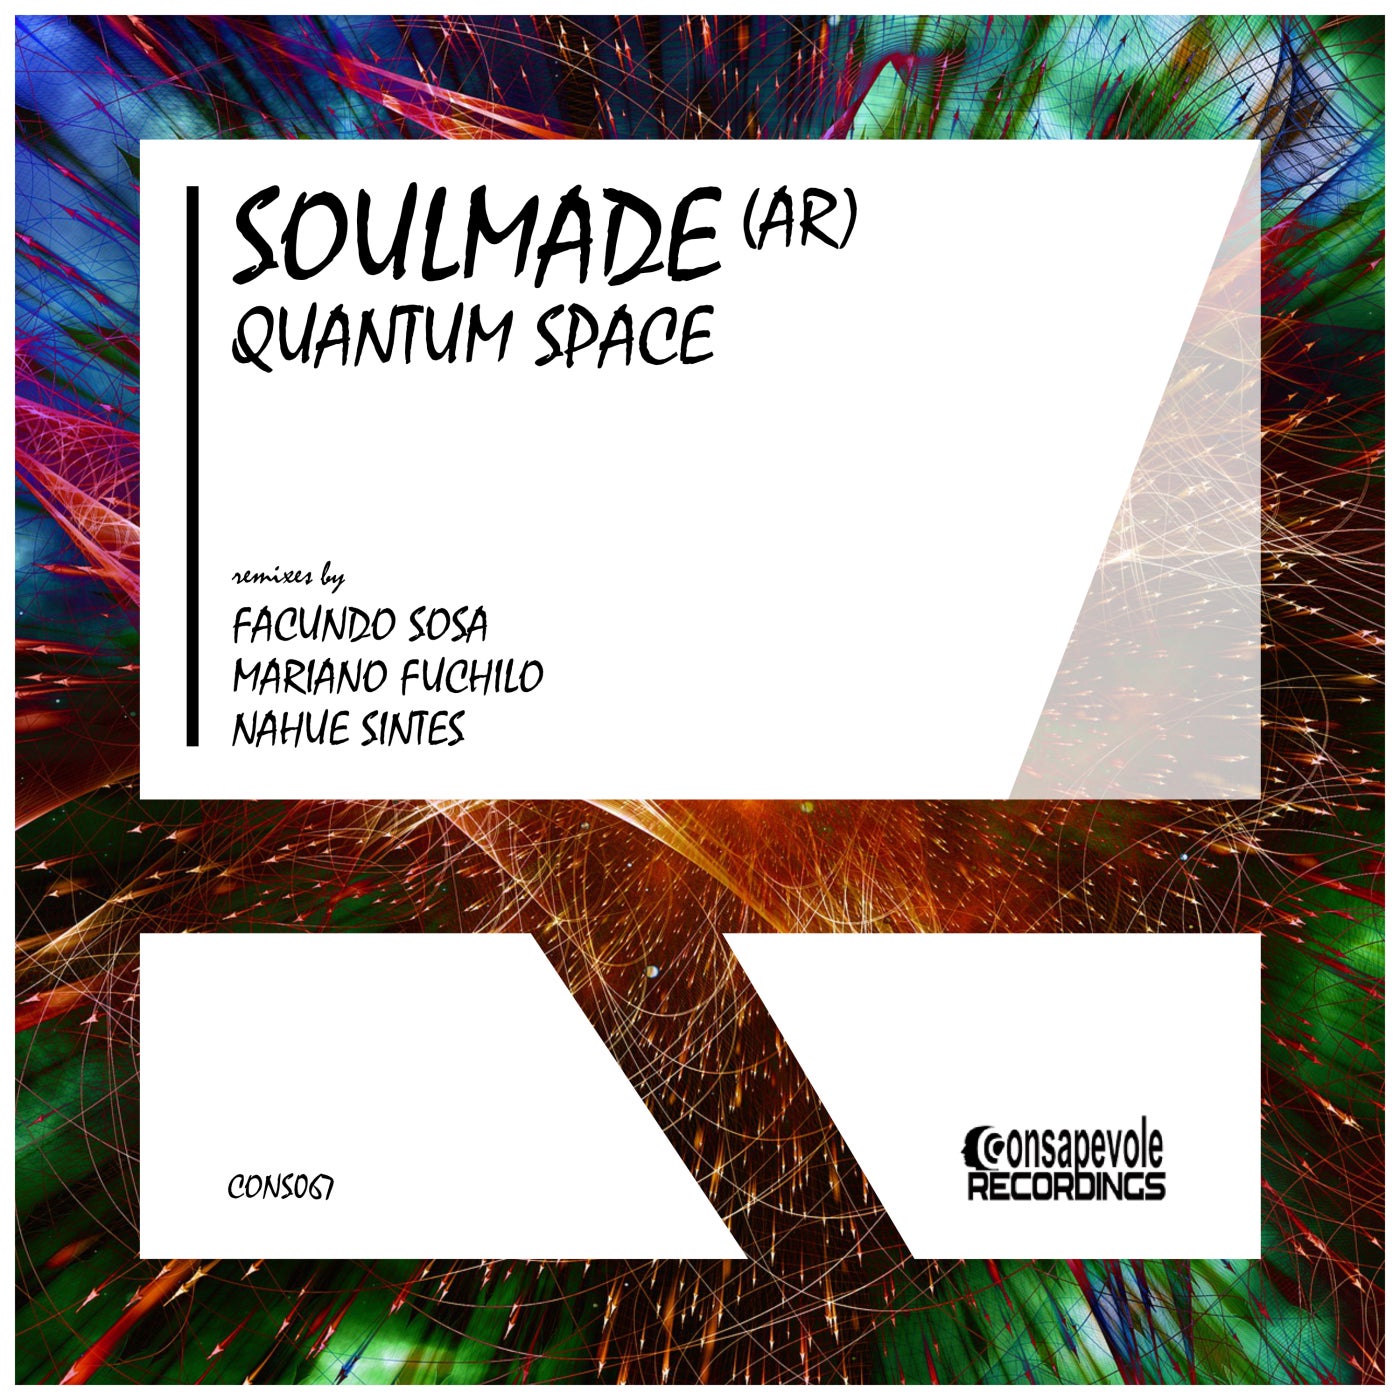 Soulmade (AR) – Quantum Space [CONS067]